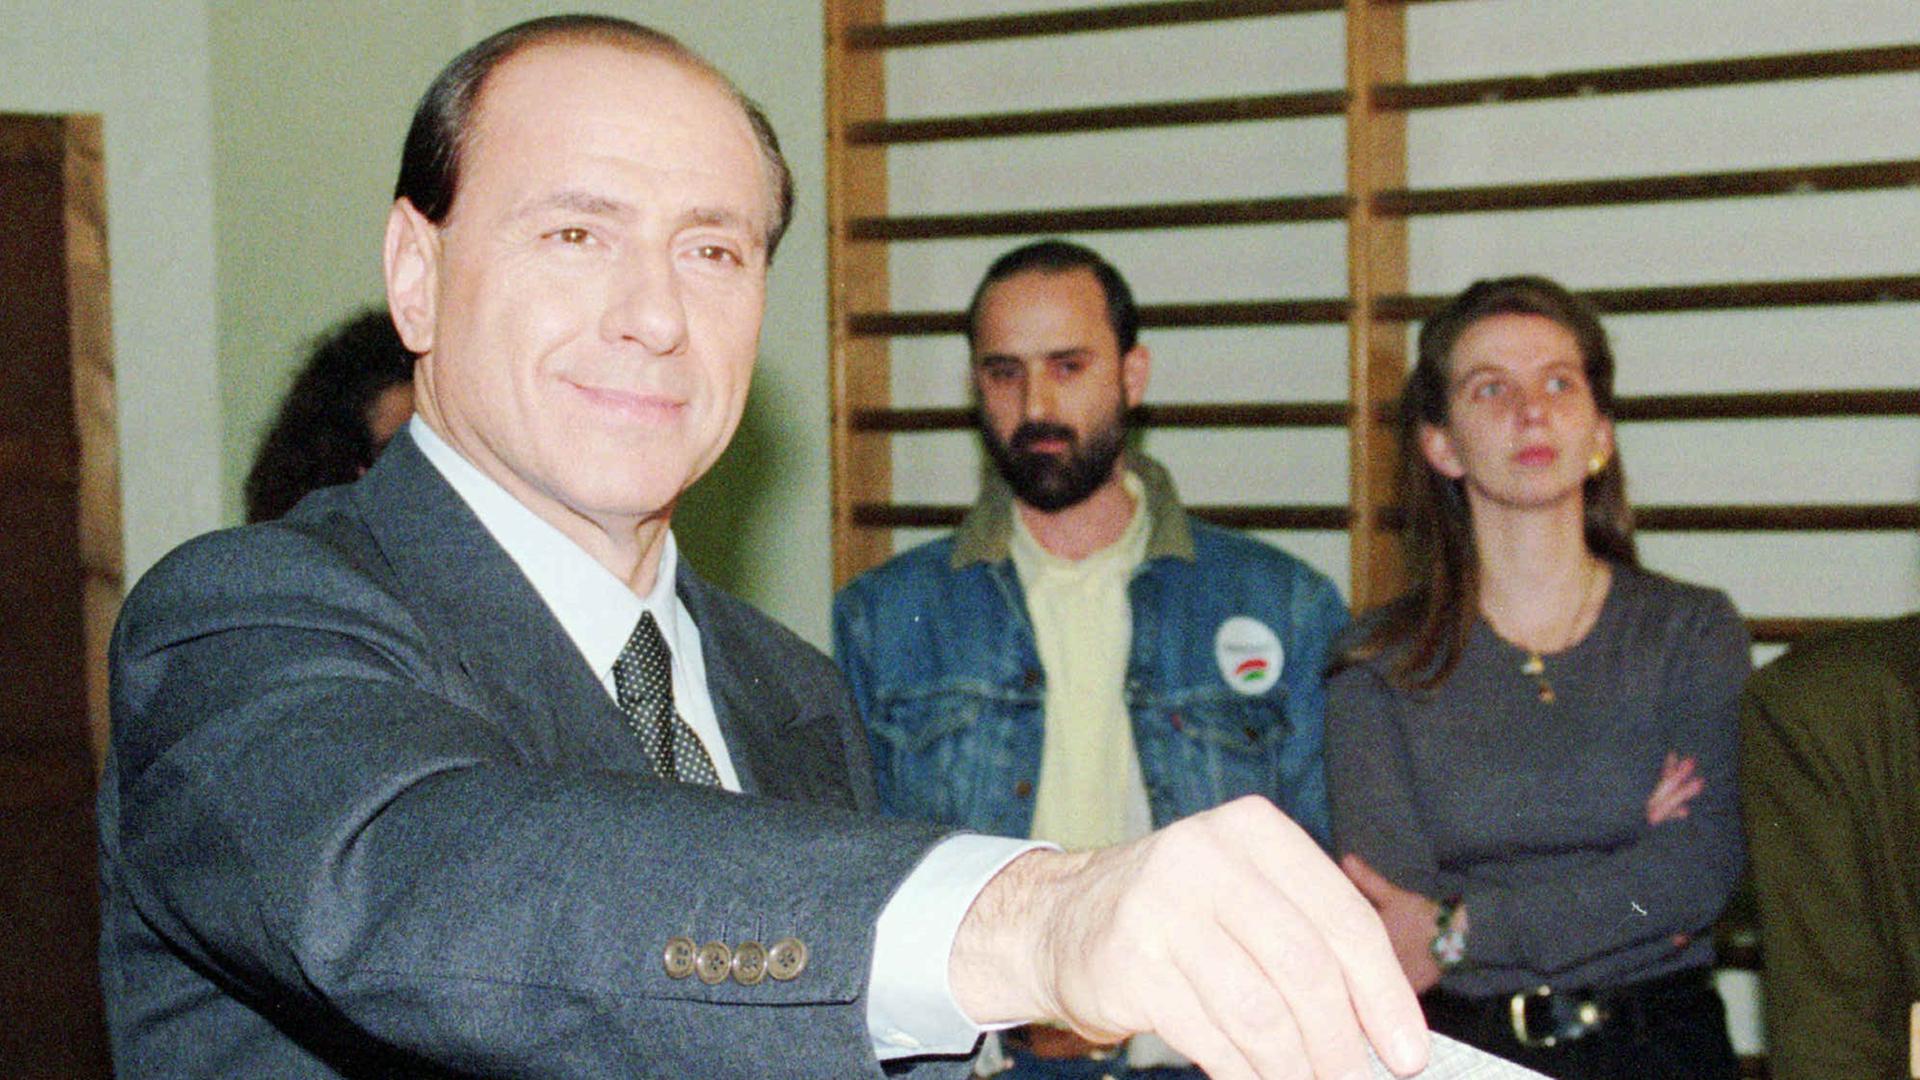 Medienmogul und Leader der Parei Forza Italia Silvio Berlusconi bei der Stimmabgabe im März 1994 